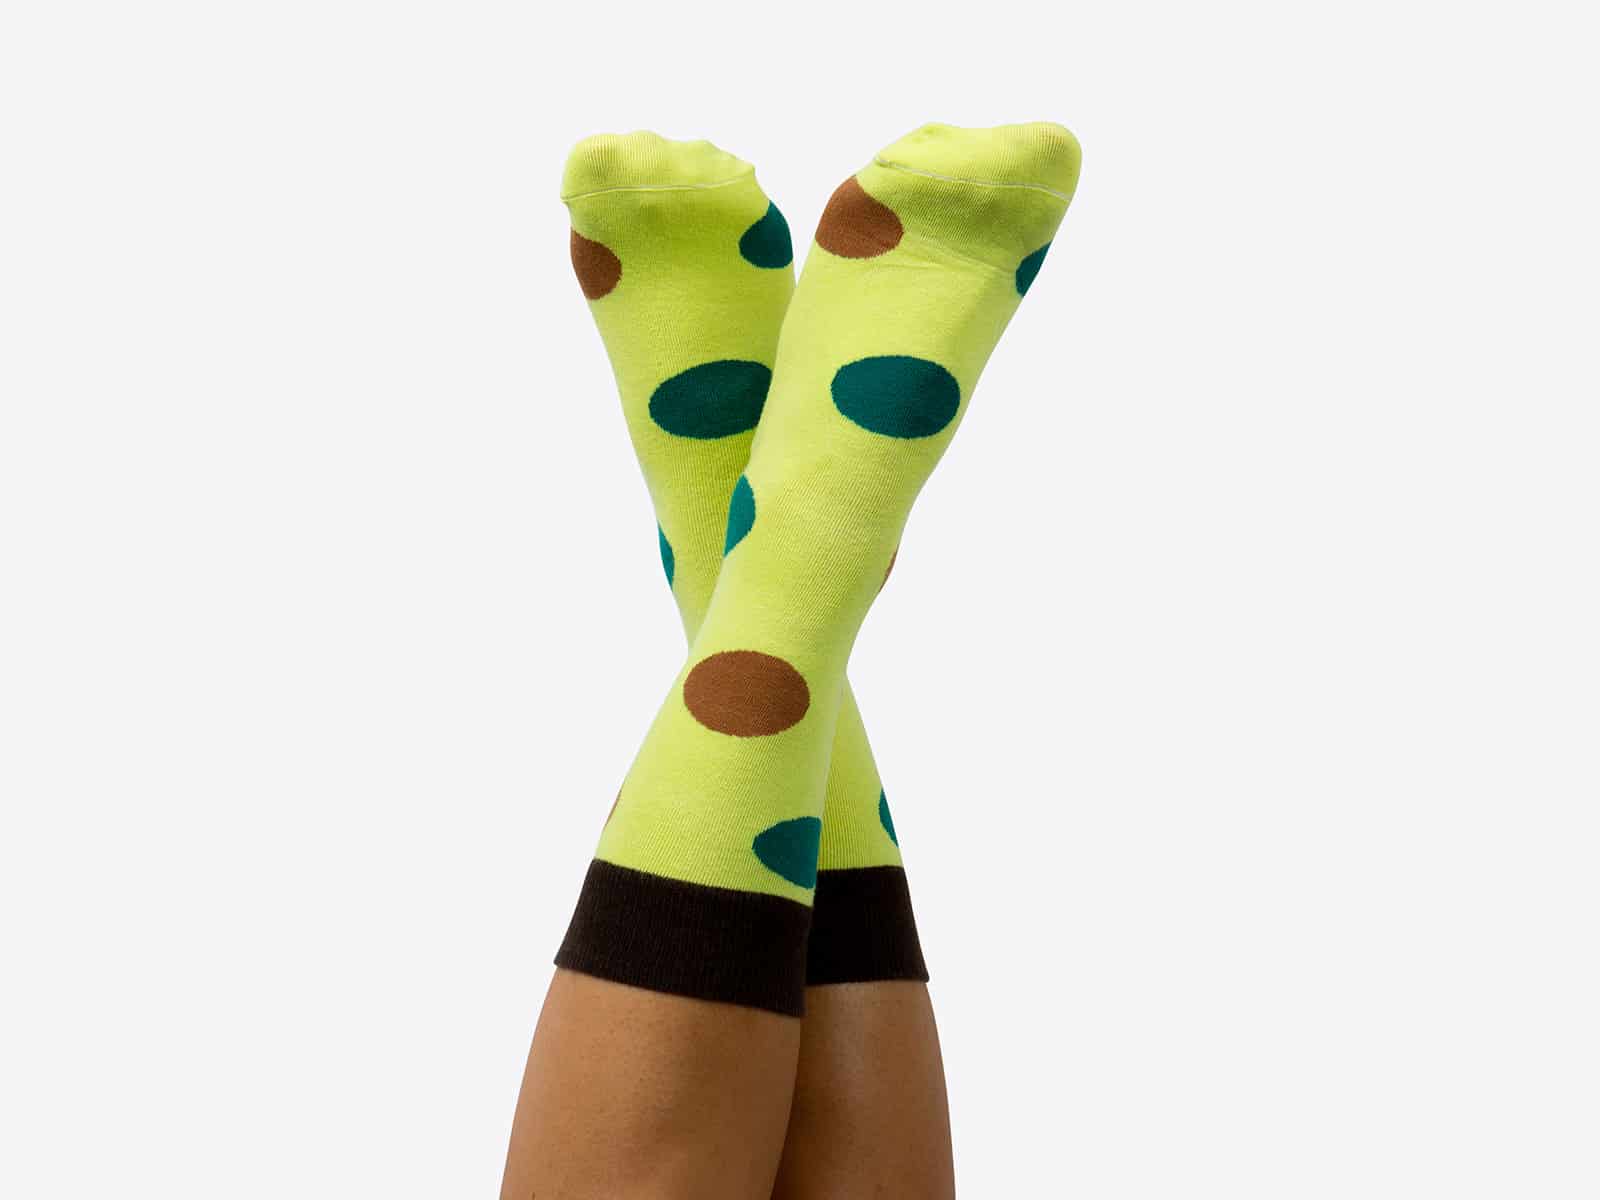 Ripe Avocado Socks - Socks